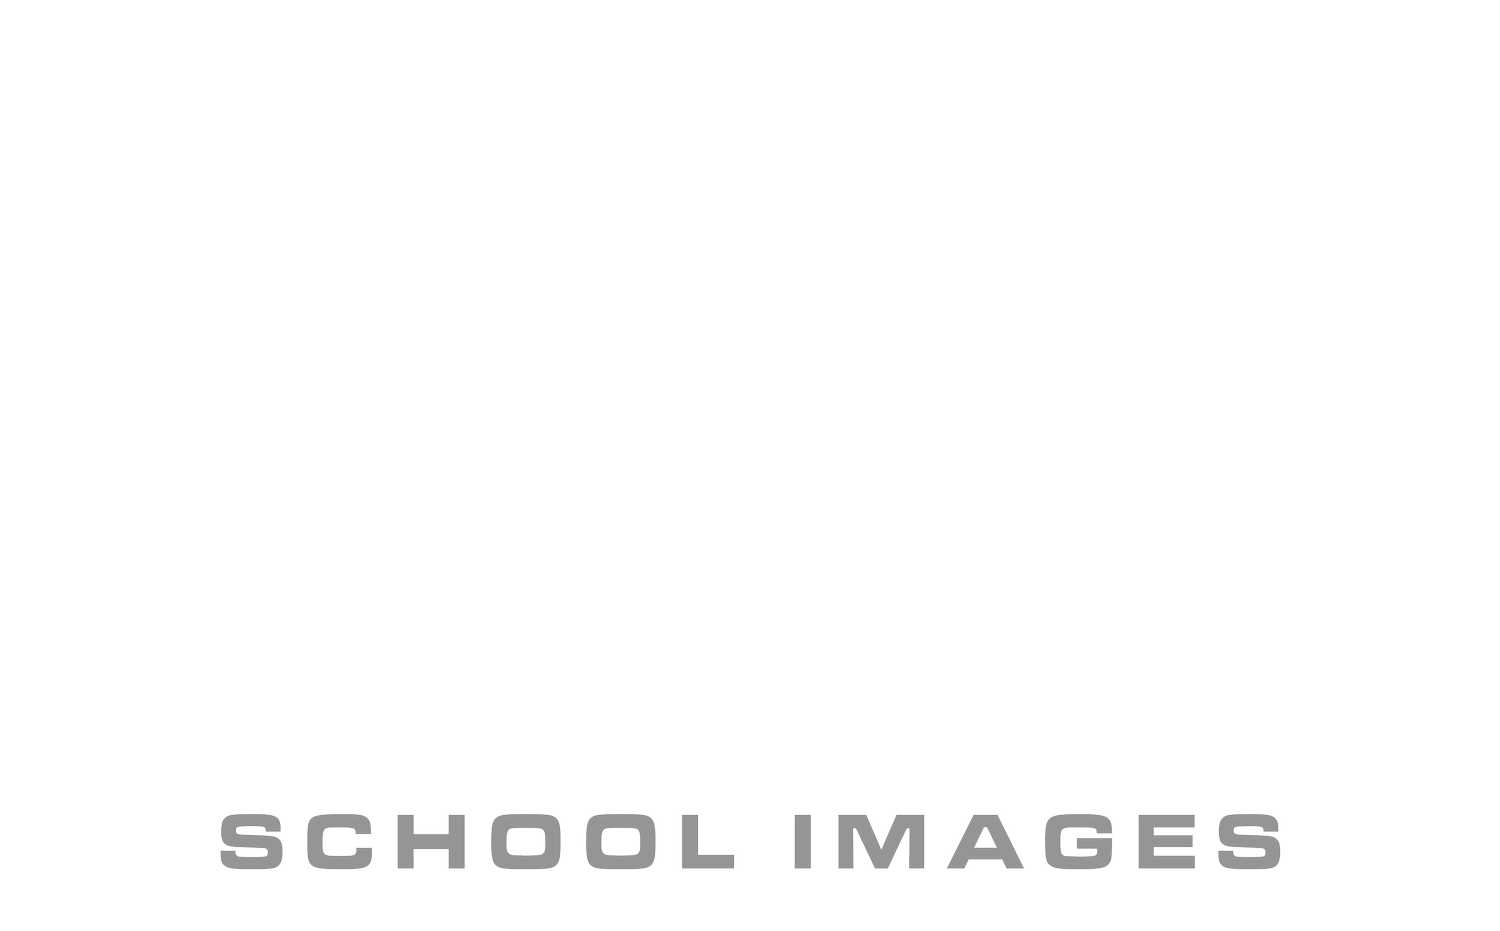 Fiscus School Images